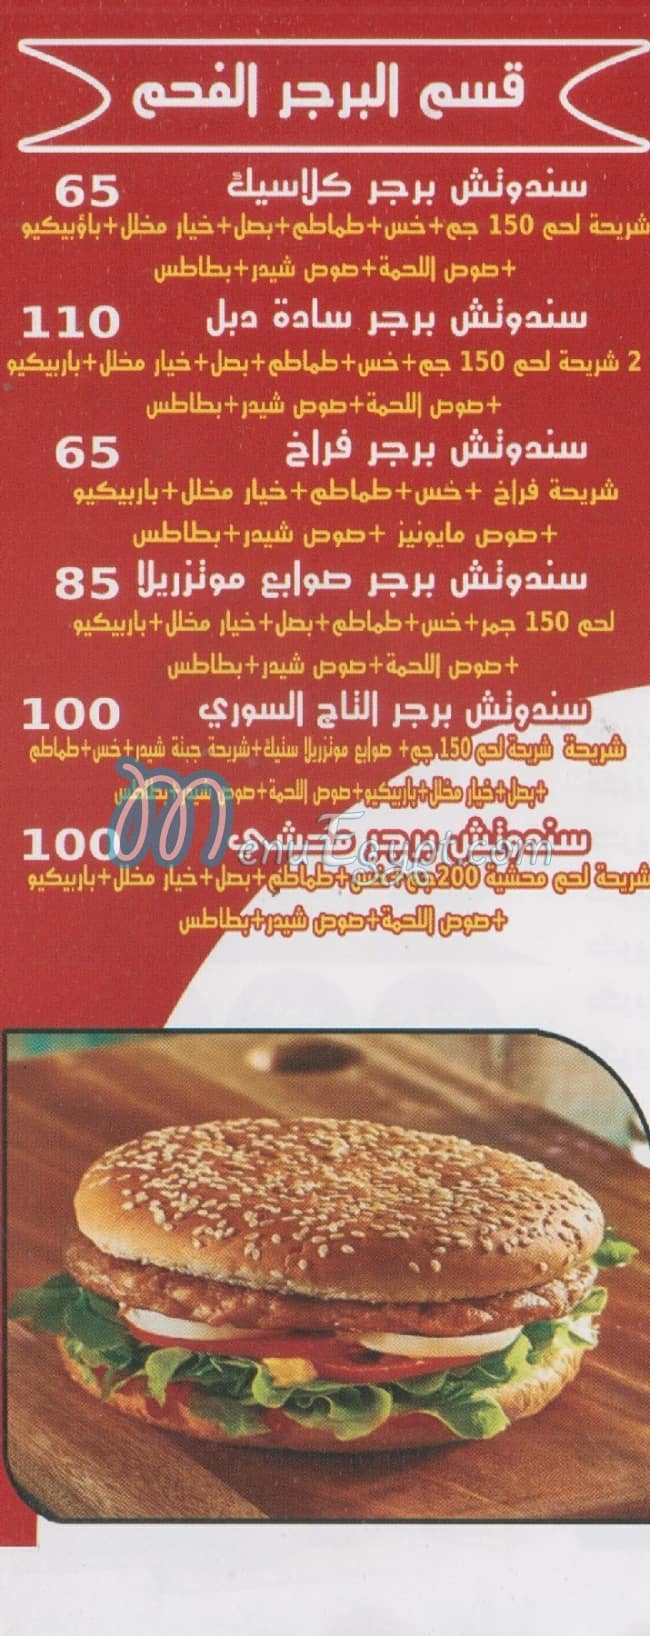 El Tag El Soury Saqer Qorysh online menu